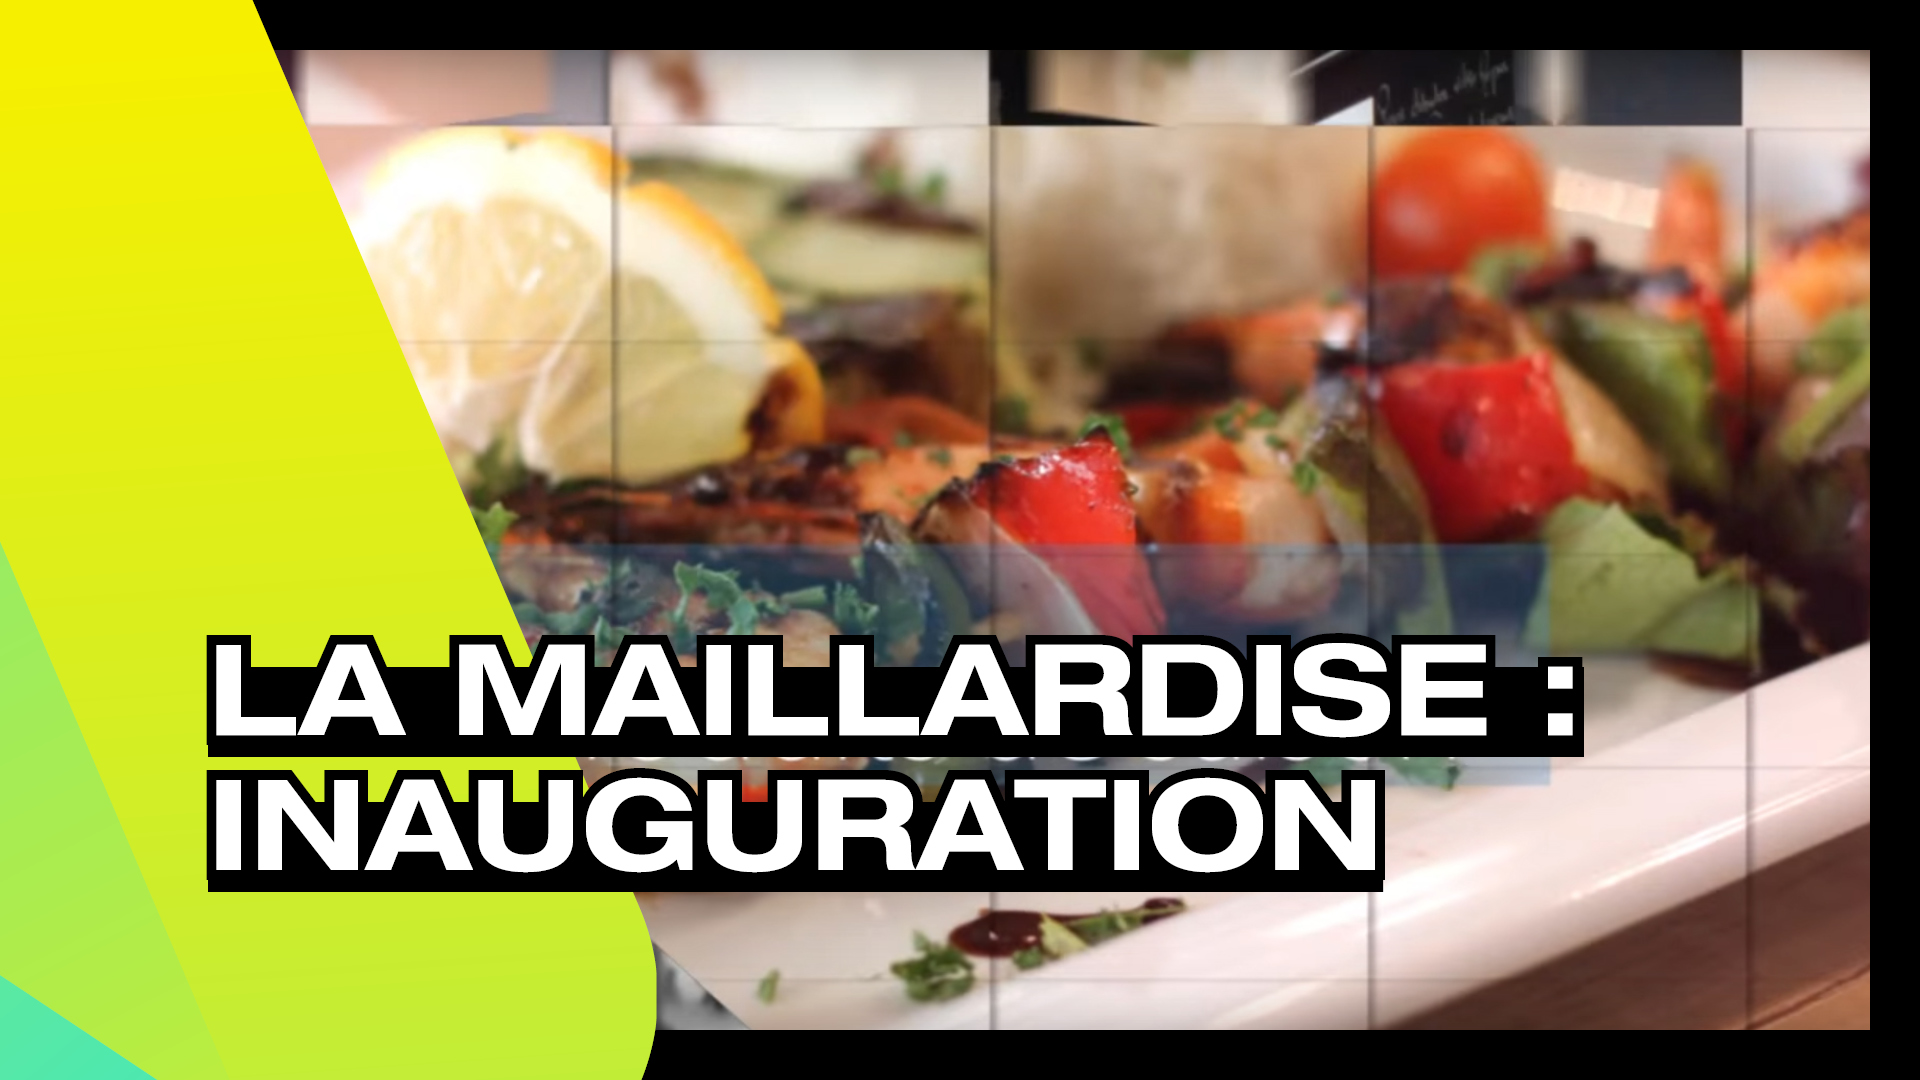 LA MAILLARDISE - Inauguration